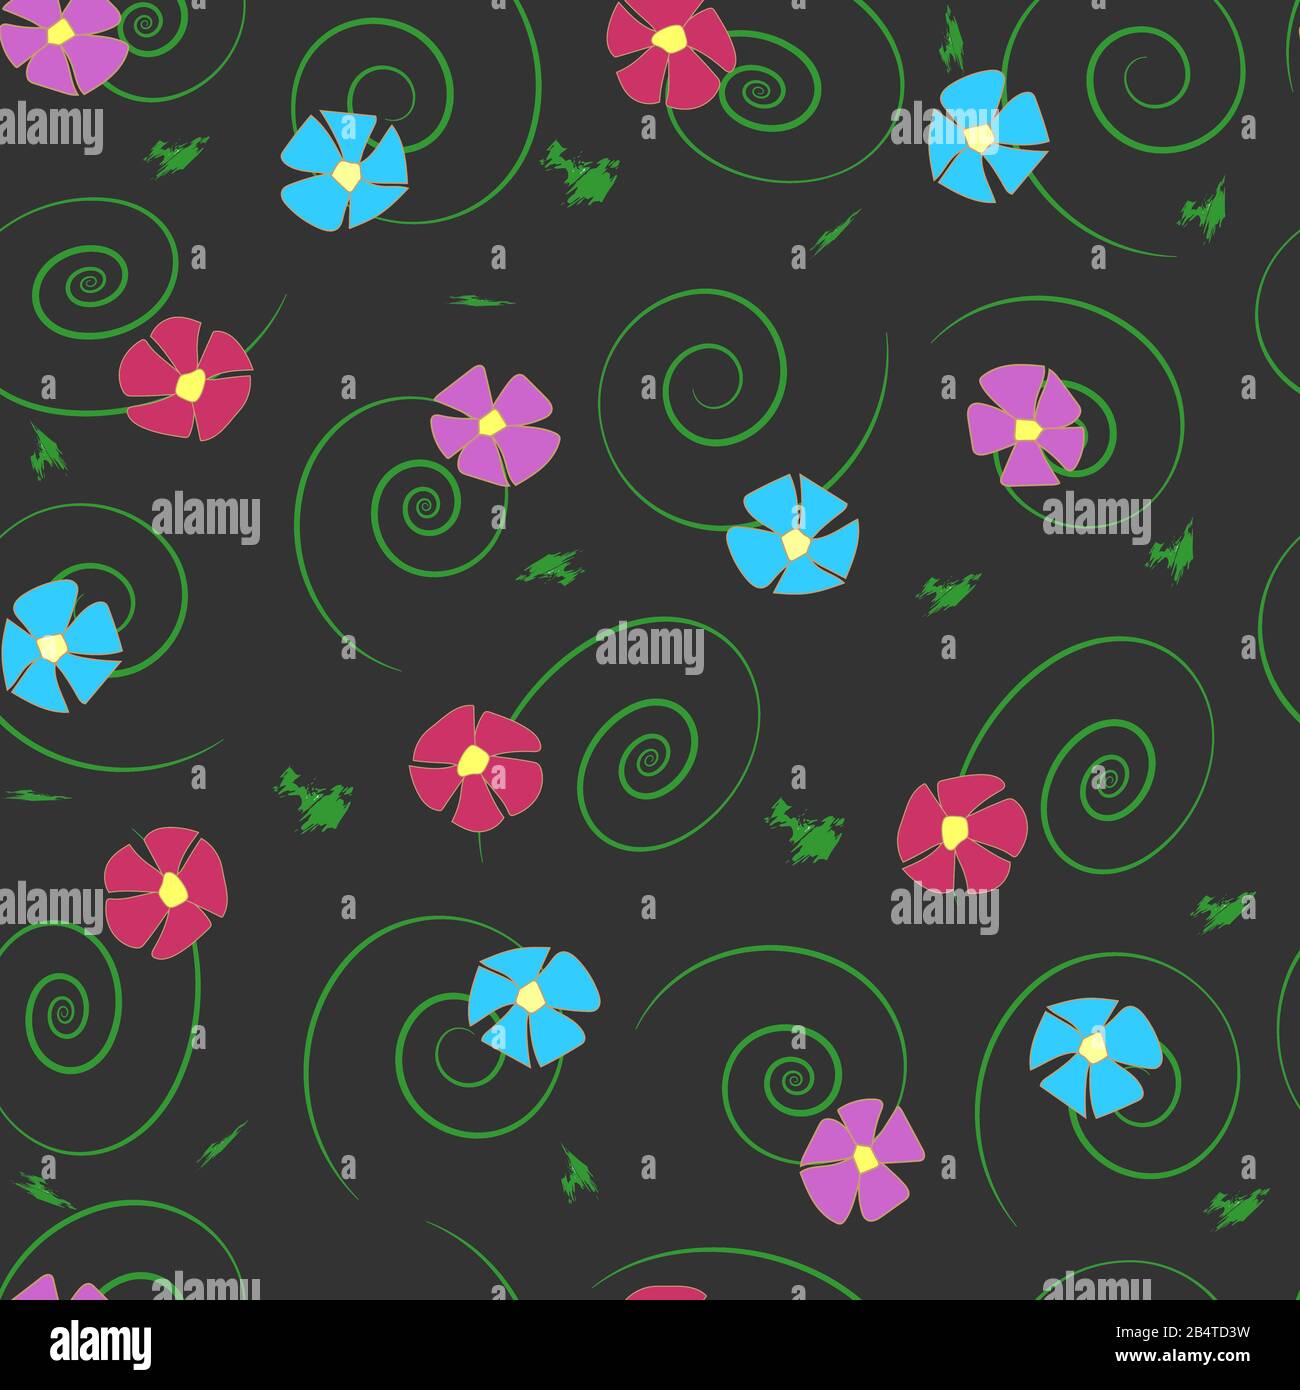 Nahtloses Muster. Einfache, fünfblättrige Blumen aus violetter, lilafarbter, blauer, weinrunder Farbe mit grünen Locken und Pinselstrichen auf dunklem Hintergrund. Stock Vektor